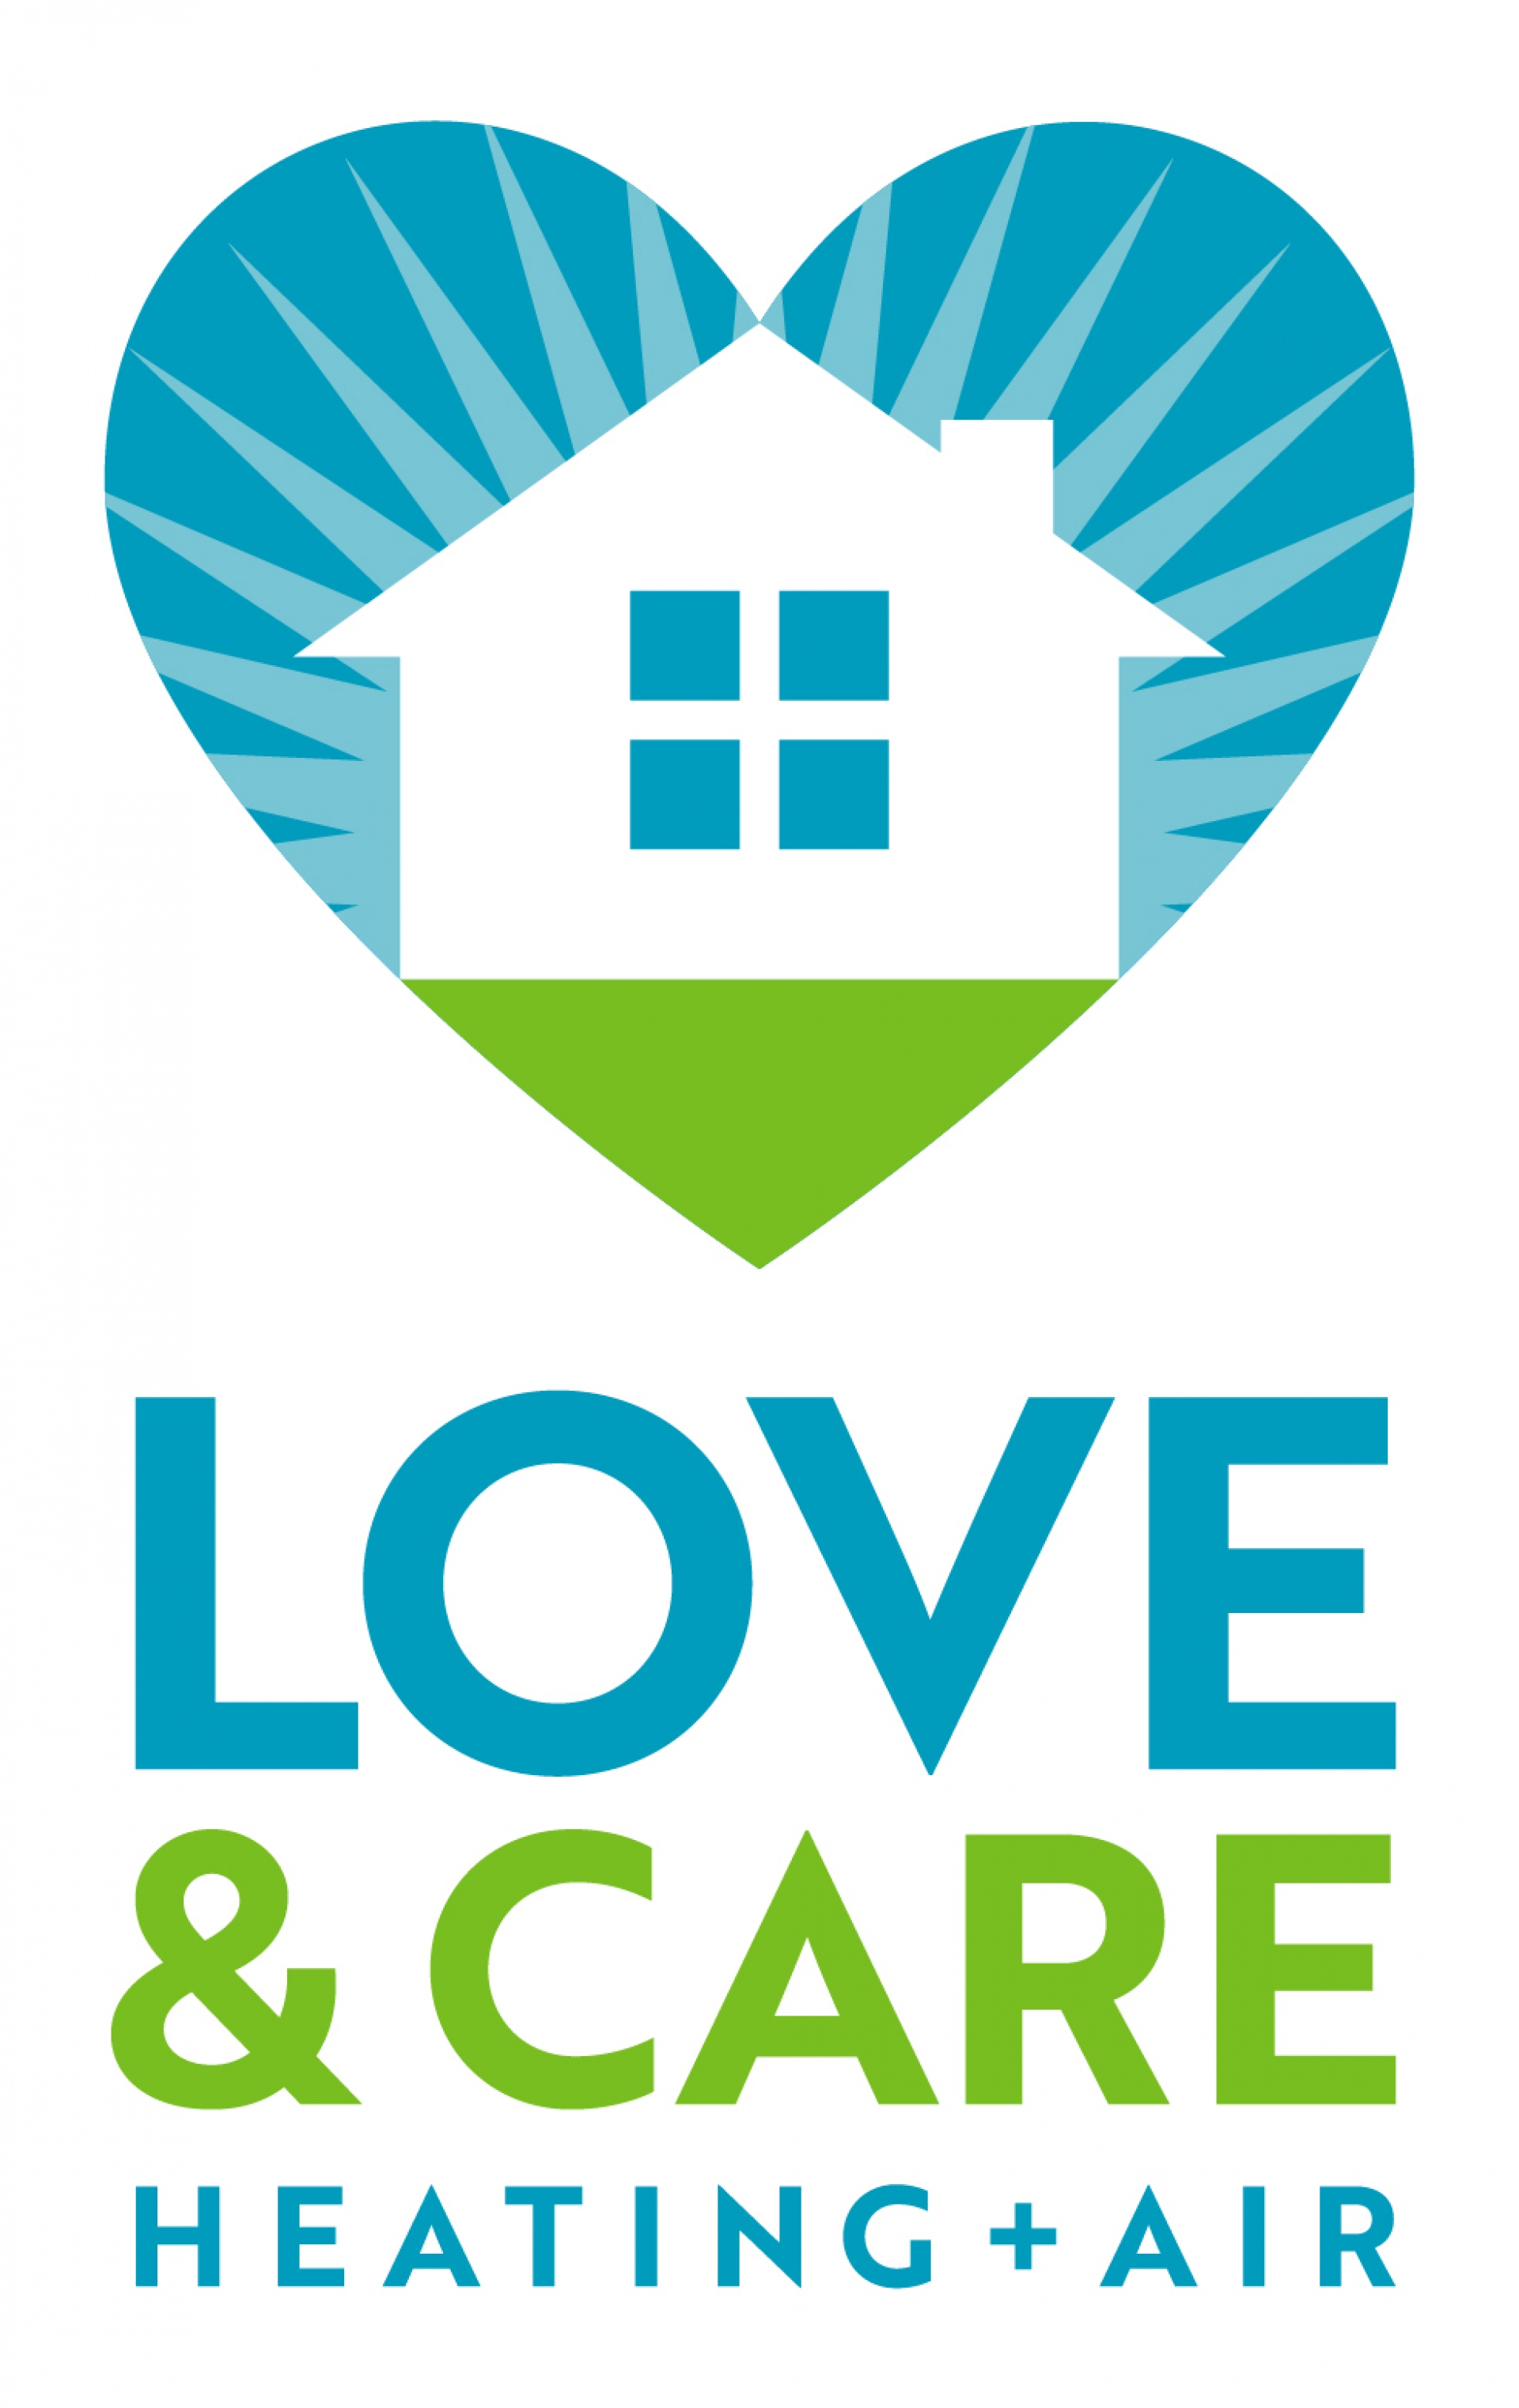 Love & Care company logo